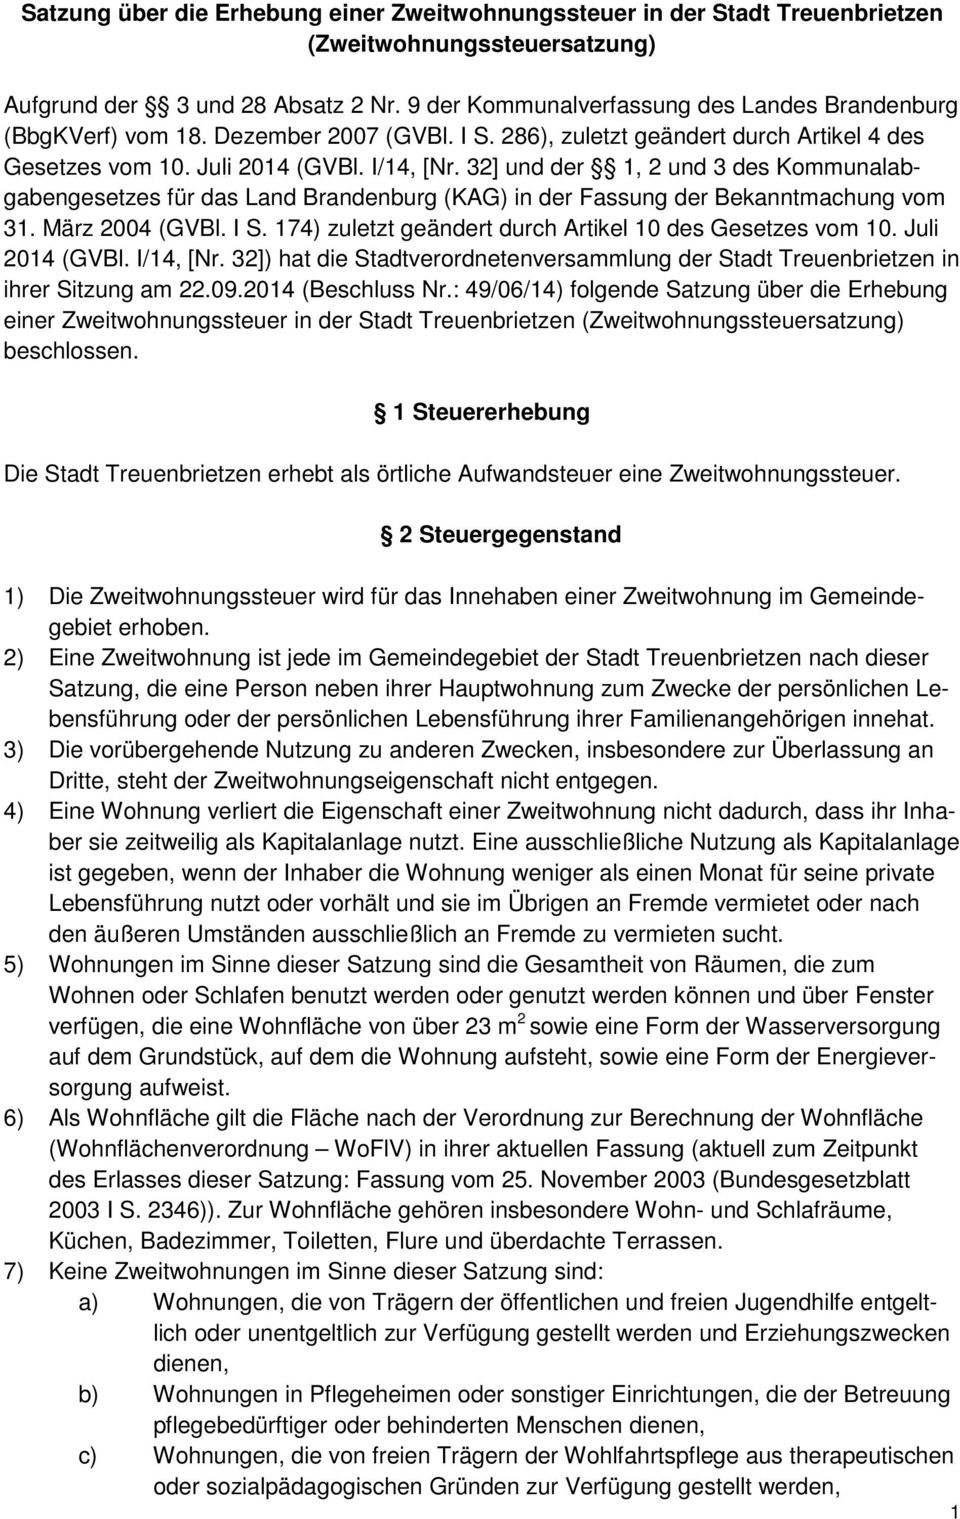 32] und der 1, 2 und 3 des Kommunalabgabengesetzes für das Land Brandenburg (KAG) in der Fassung der Bekanntmachung vom 31. März 2004 (GVBl. I S.